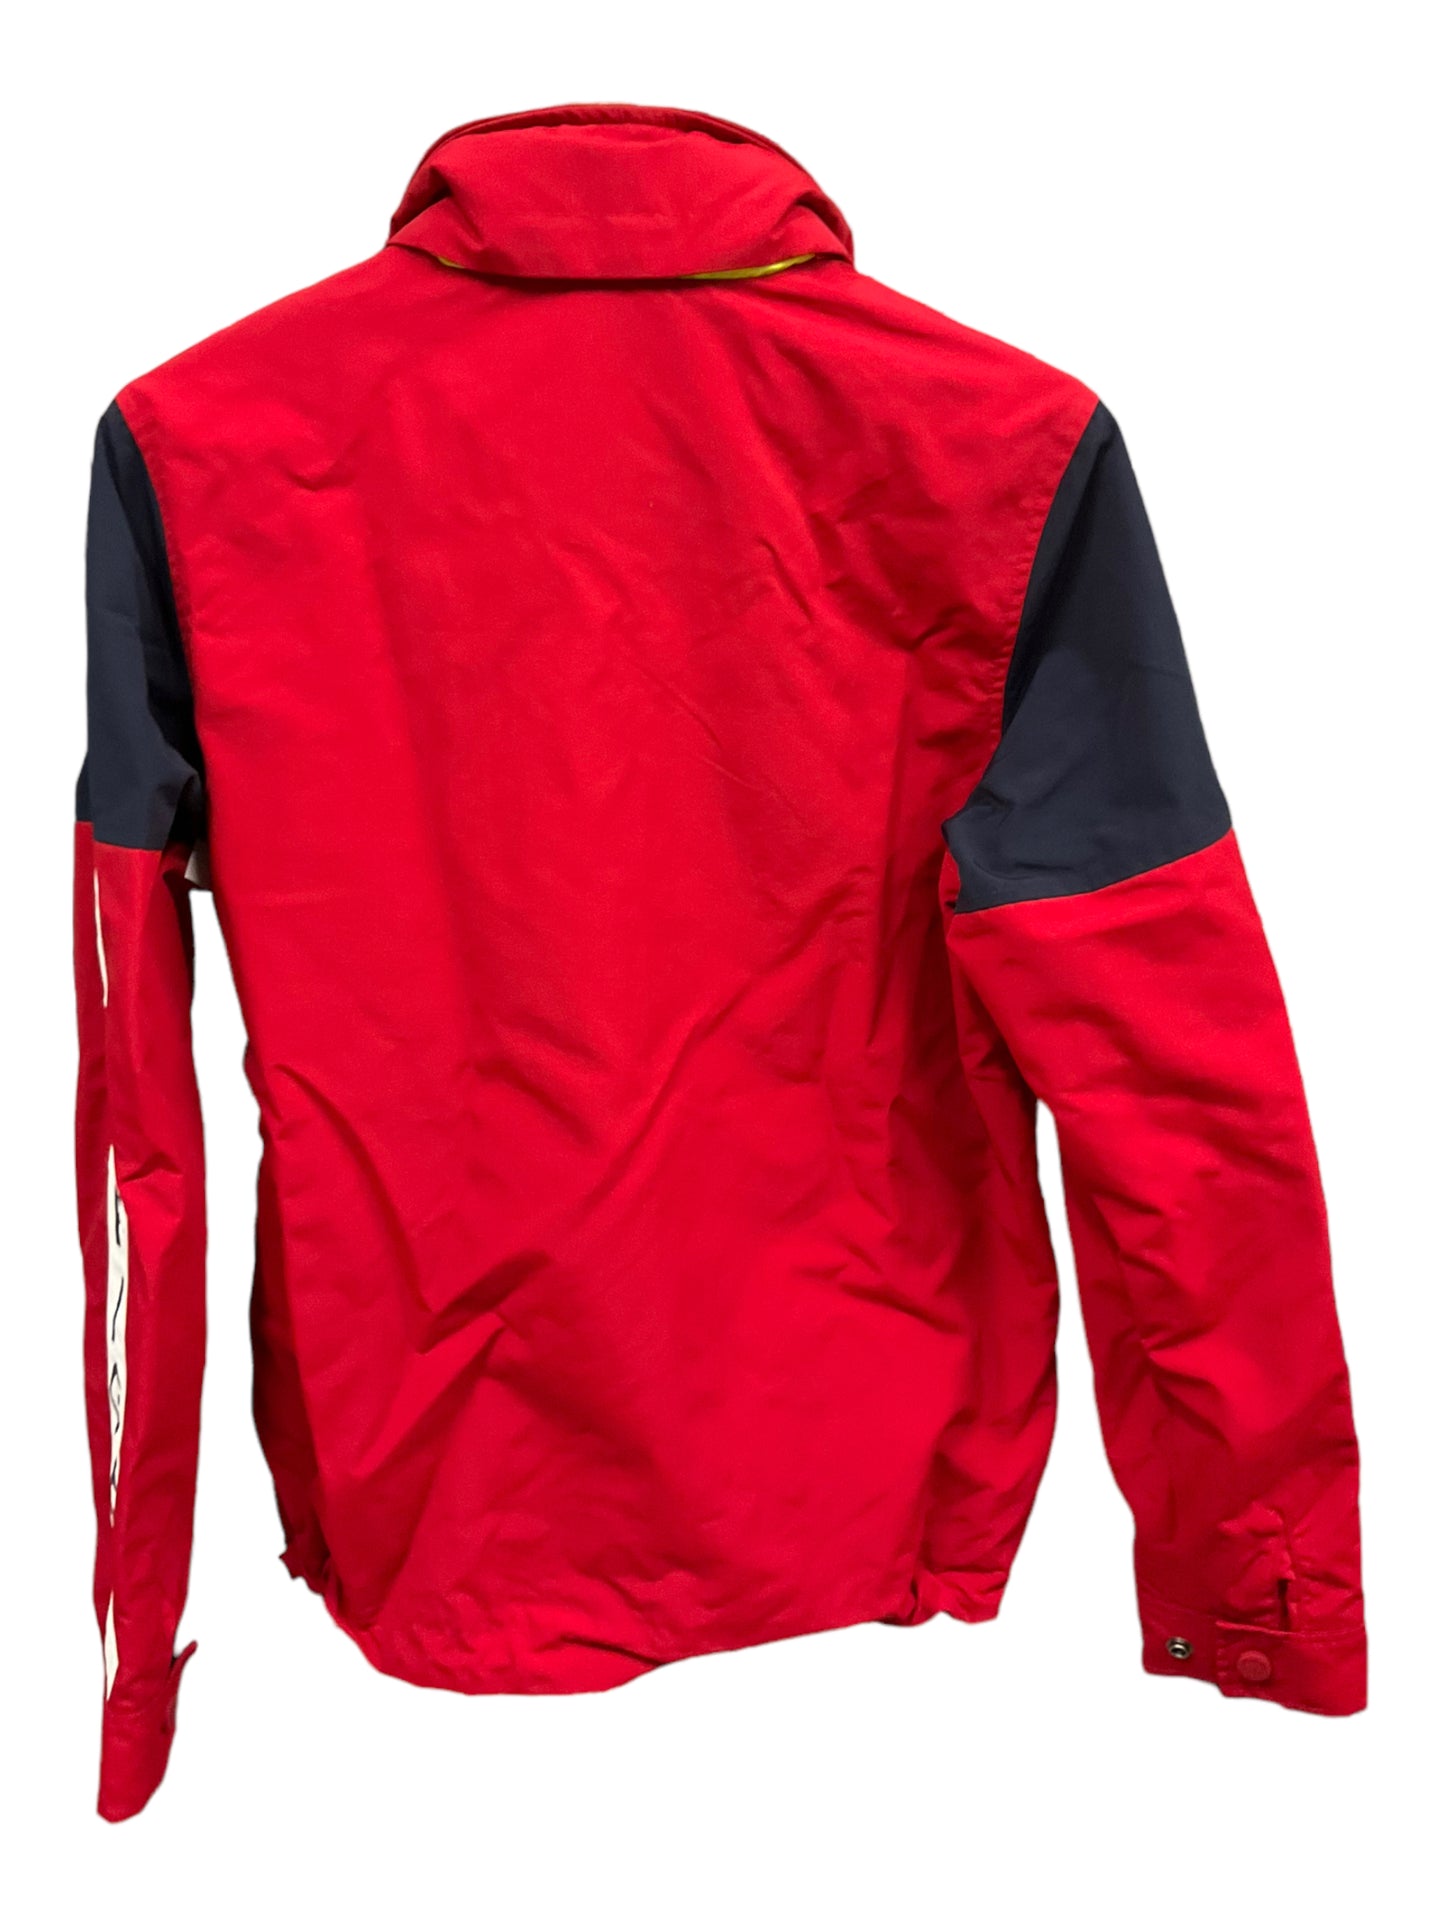 Jacket Windbreaker By Tommy Hilfiger  Size: Xs